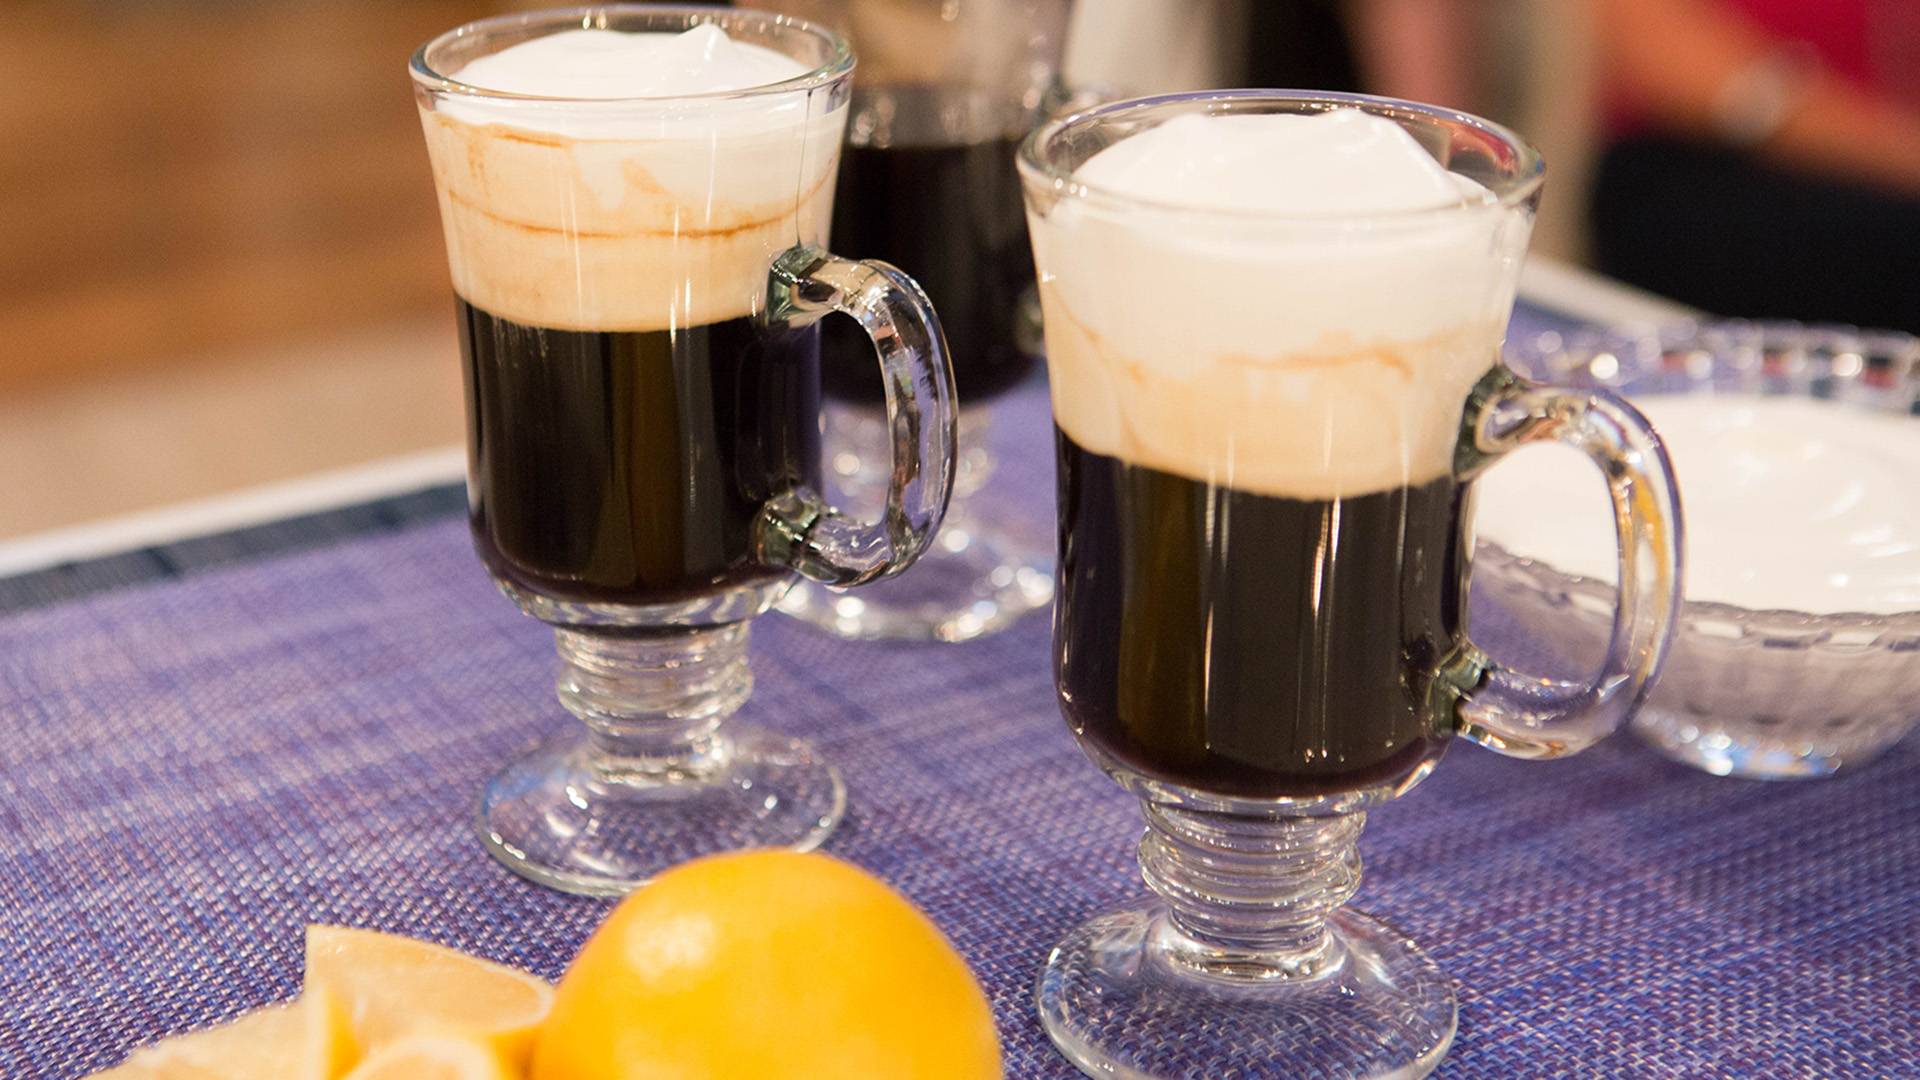 Кофе по ирландски (айриш) - рецепты изготовления в домашних условиях, состав irish coffee